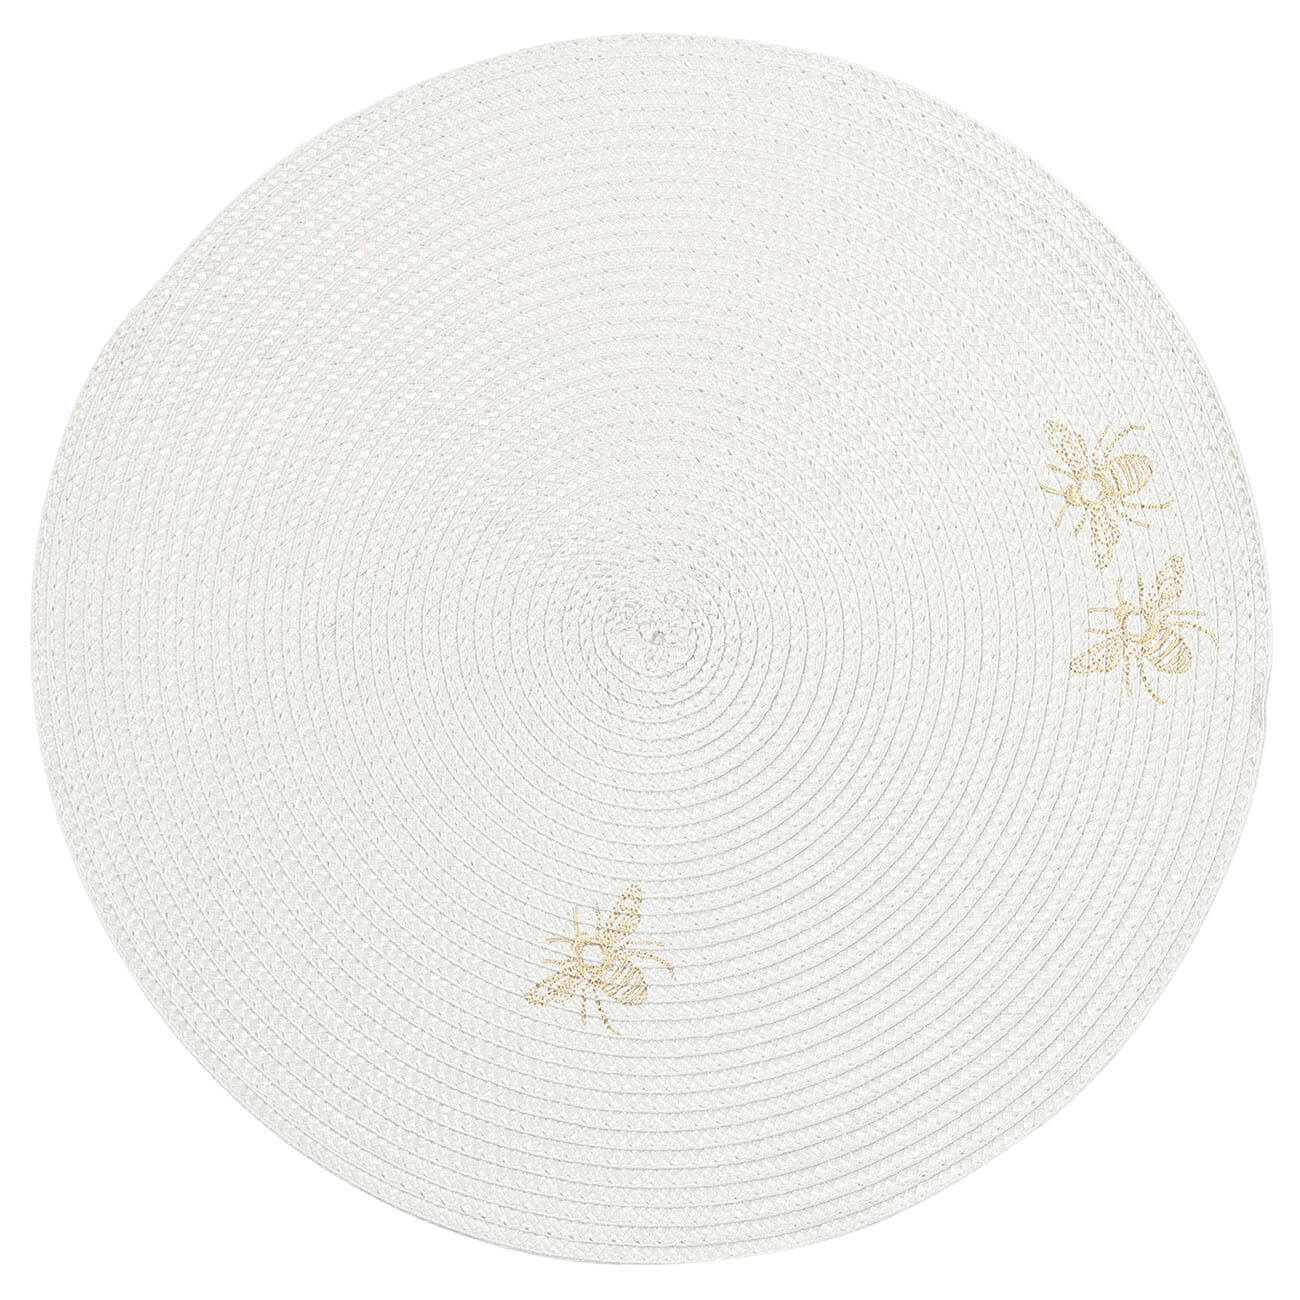 Салфетка под приборы, 38 см, полипропилен/ПЭТ, круглая, светло-серая, Пчелы, Circle embroidery универсальная сверхплотная салфетка zeus